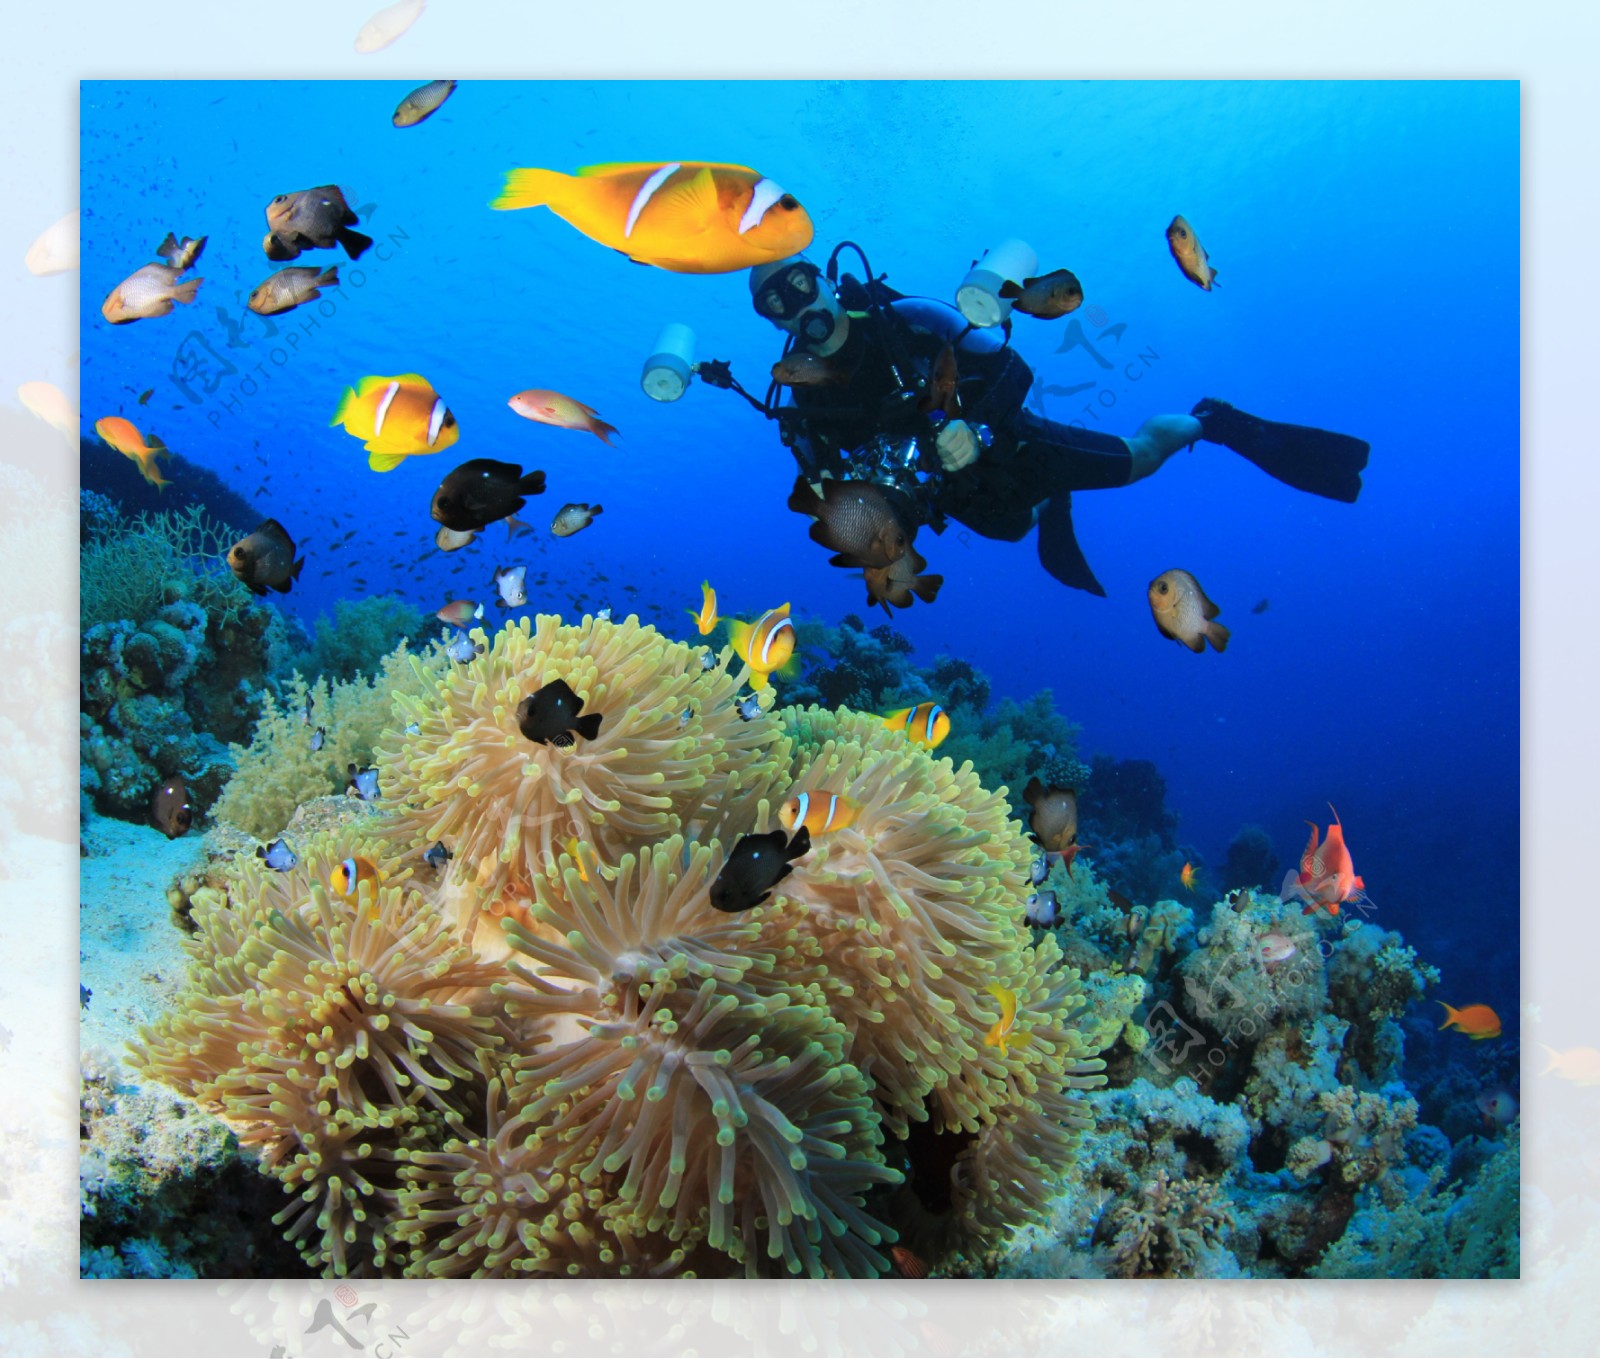 海底的珊瑚和鱼类以及潜水员图片